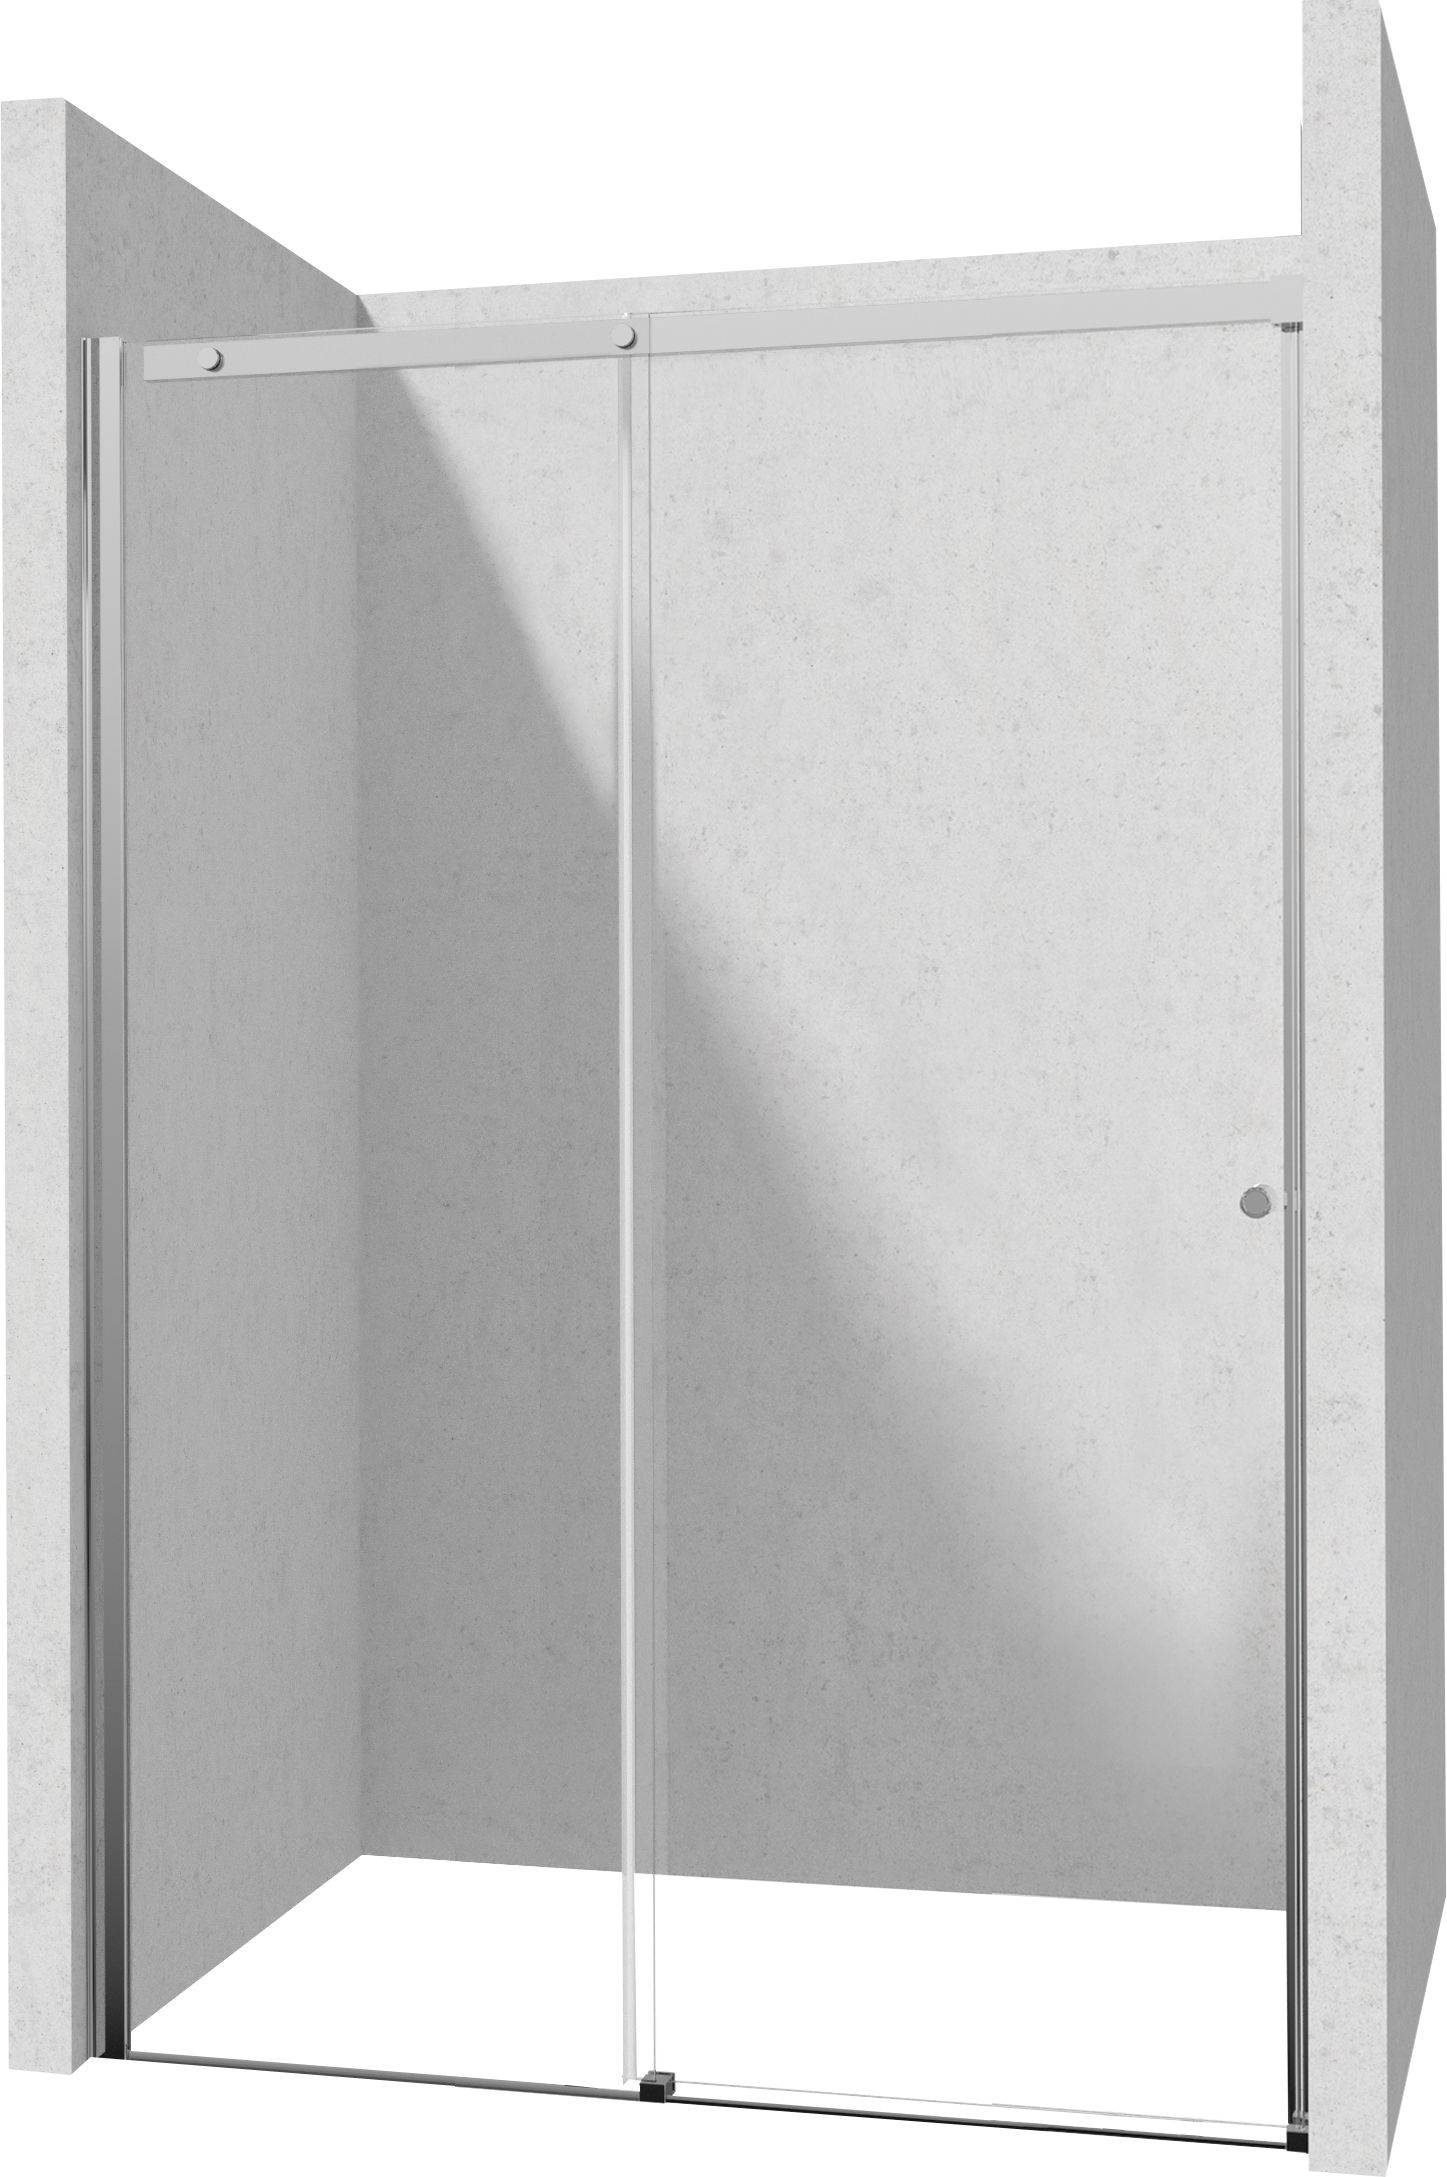 Drzwi prysznicowe 180 cm - przesuwne - KTSP018P - Główne zdjęcie produktowe